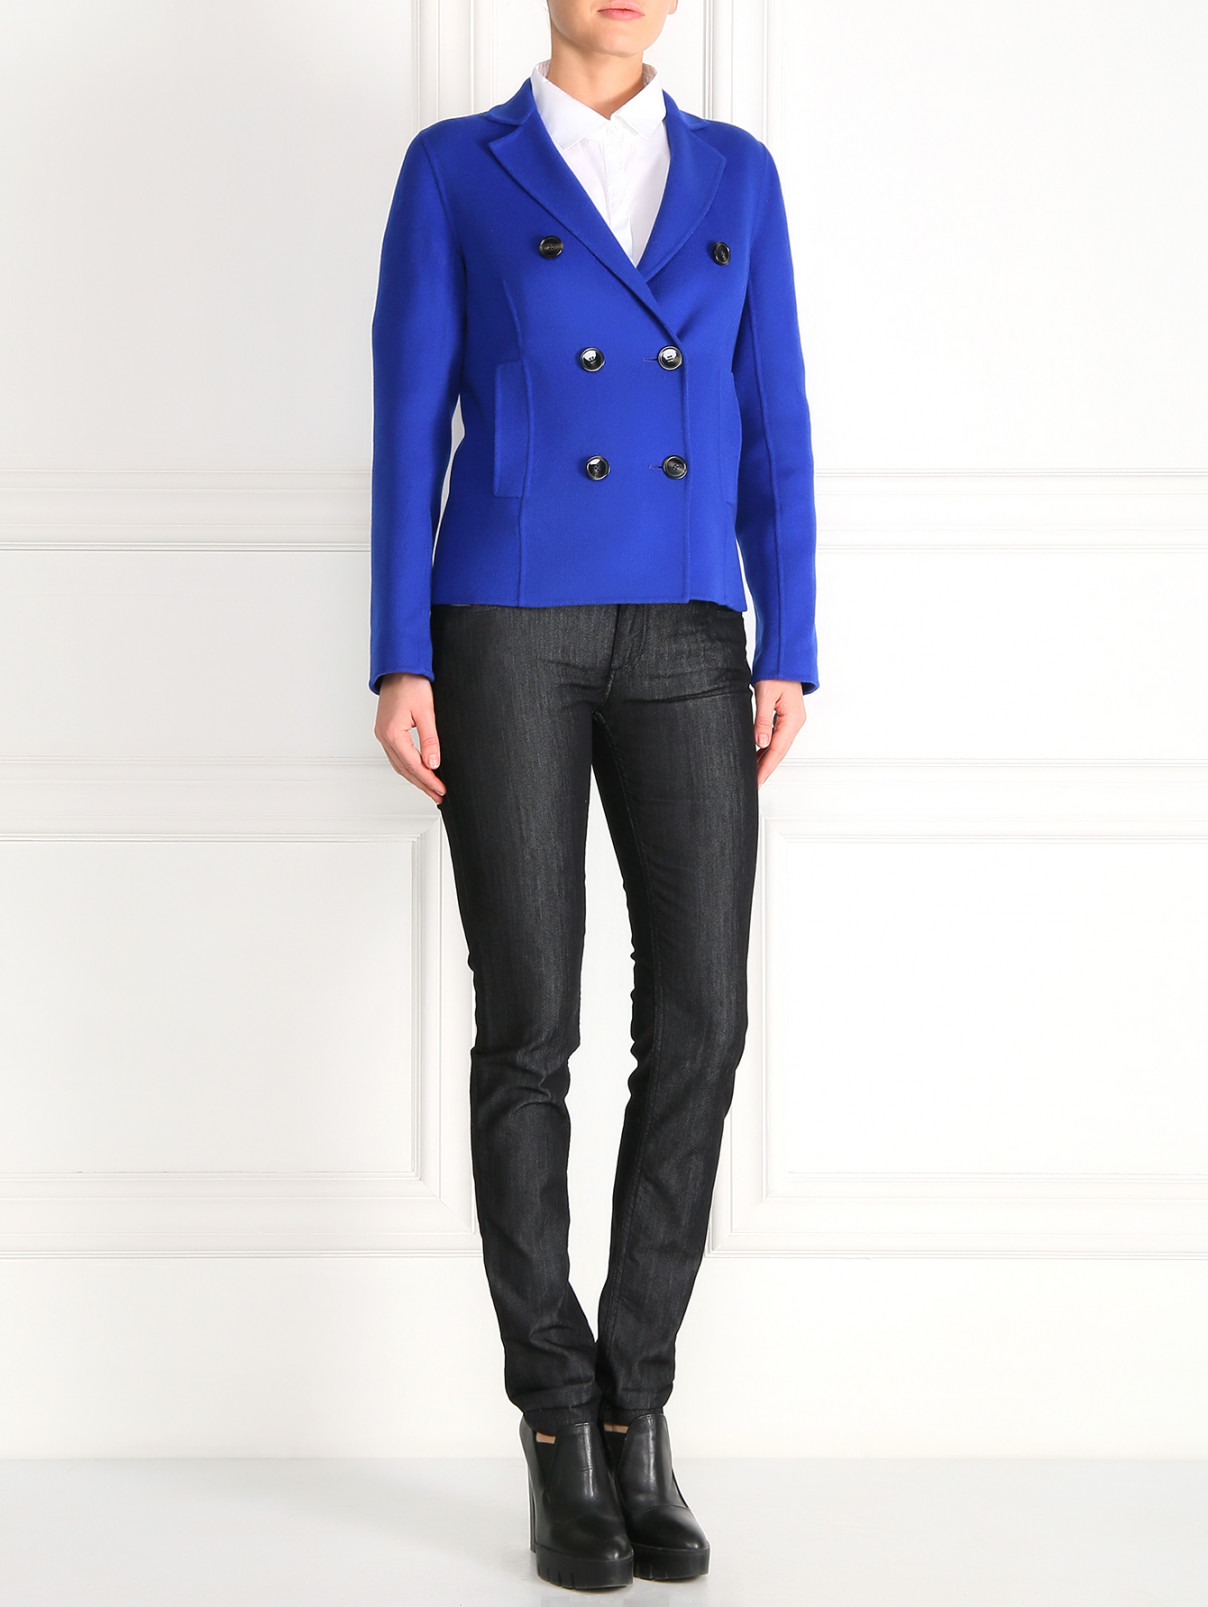 Укороченное пальто из шерсти Weekend Max Mara  –  Модель Общий вид  – Цвет:  Синий